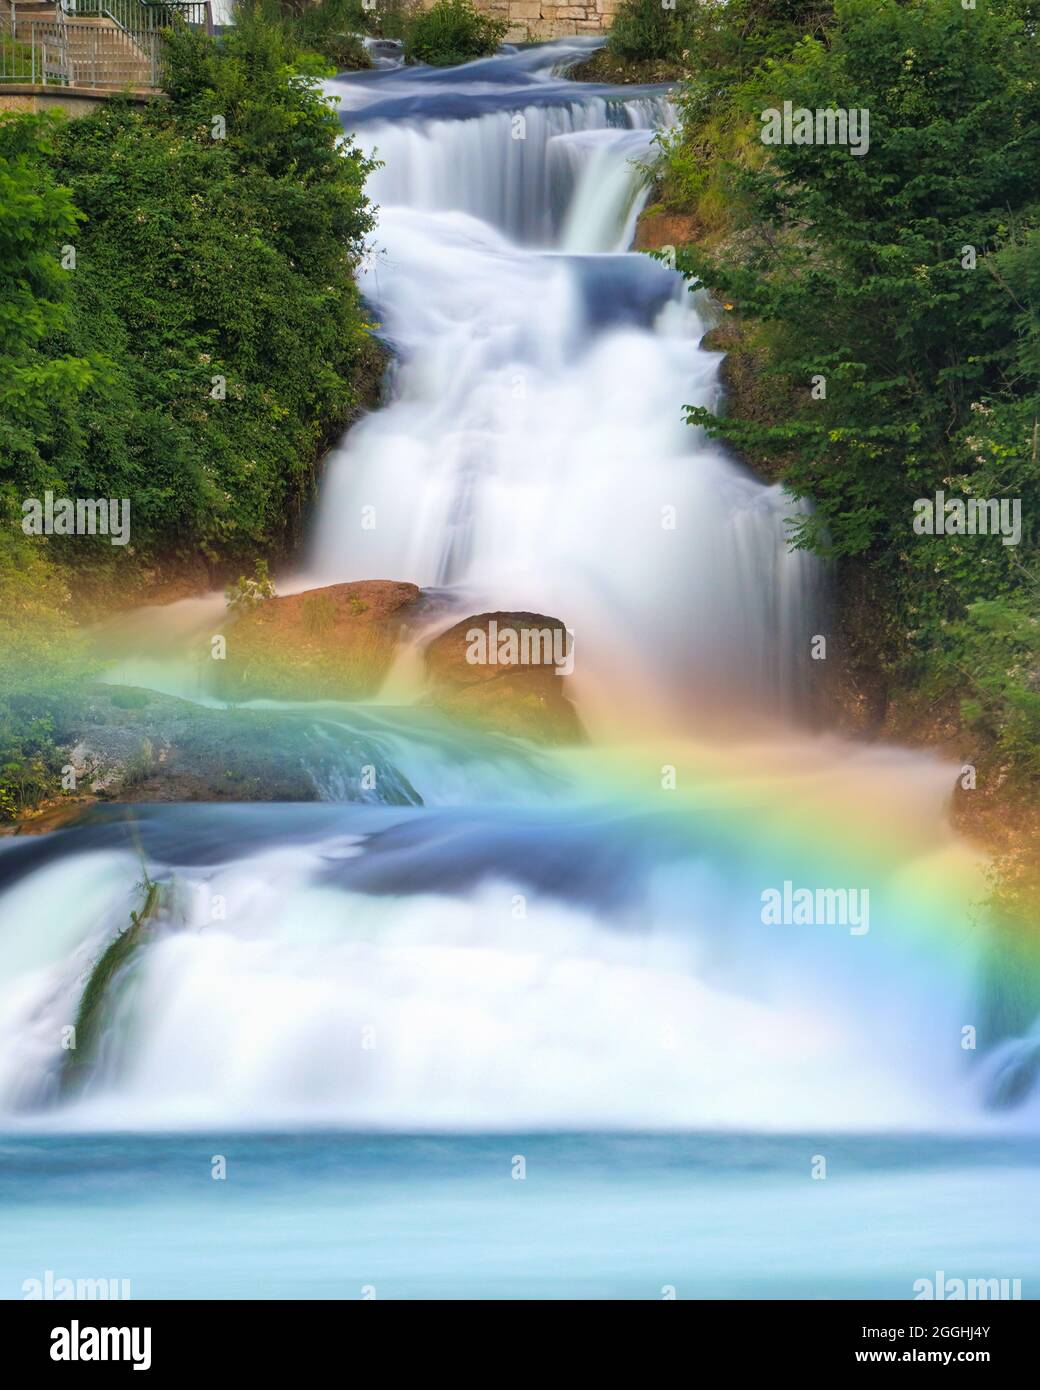 Cascate del Reno. Famosa cascata in Europa, situata in Svizzera vicino a Sciaffusa. Foto a lunga esposizione con bellissimo arcobaleno sul fiume. Foto Stock